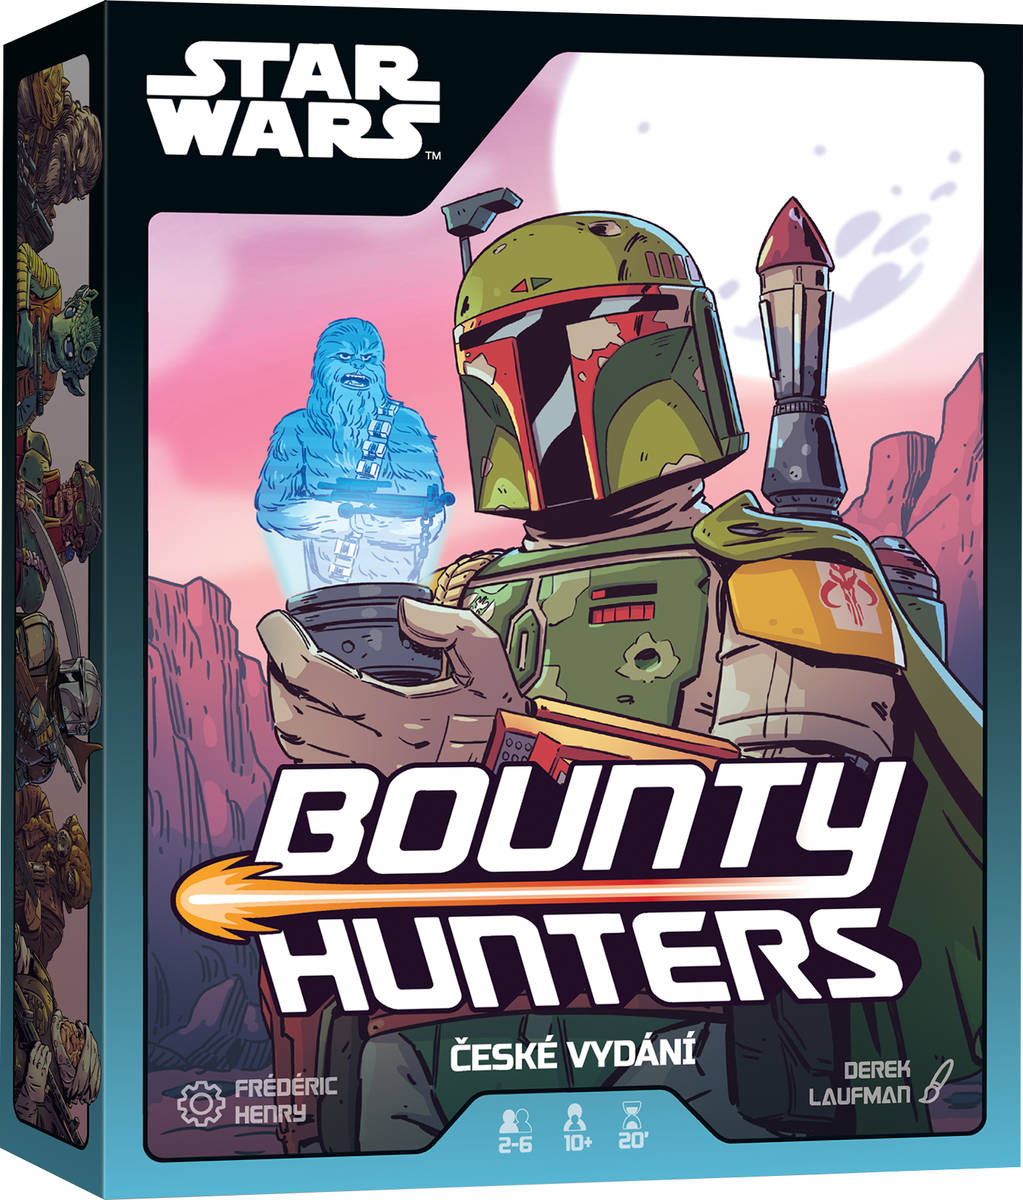 ADC Hra Star Wars: Bounty Hunters strategická CZ *SPOLEČENSKÉ HRY*